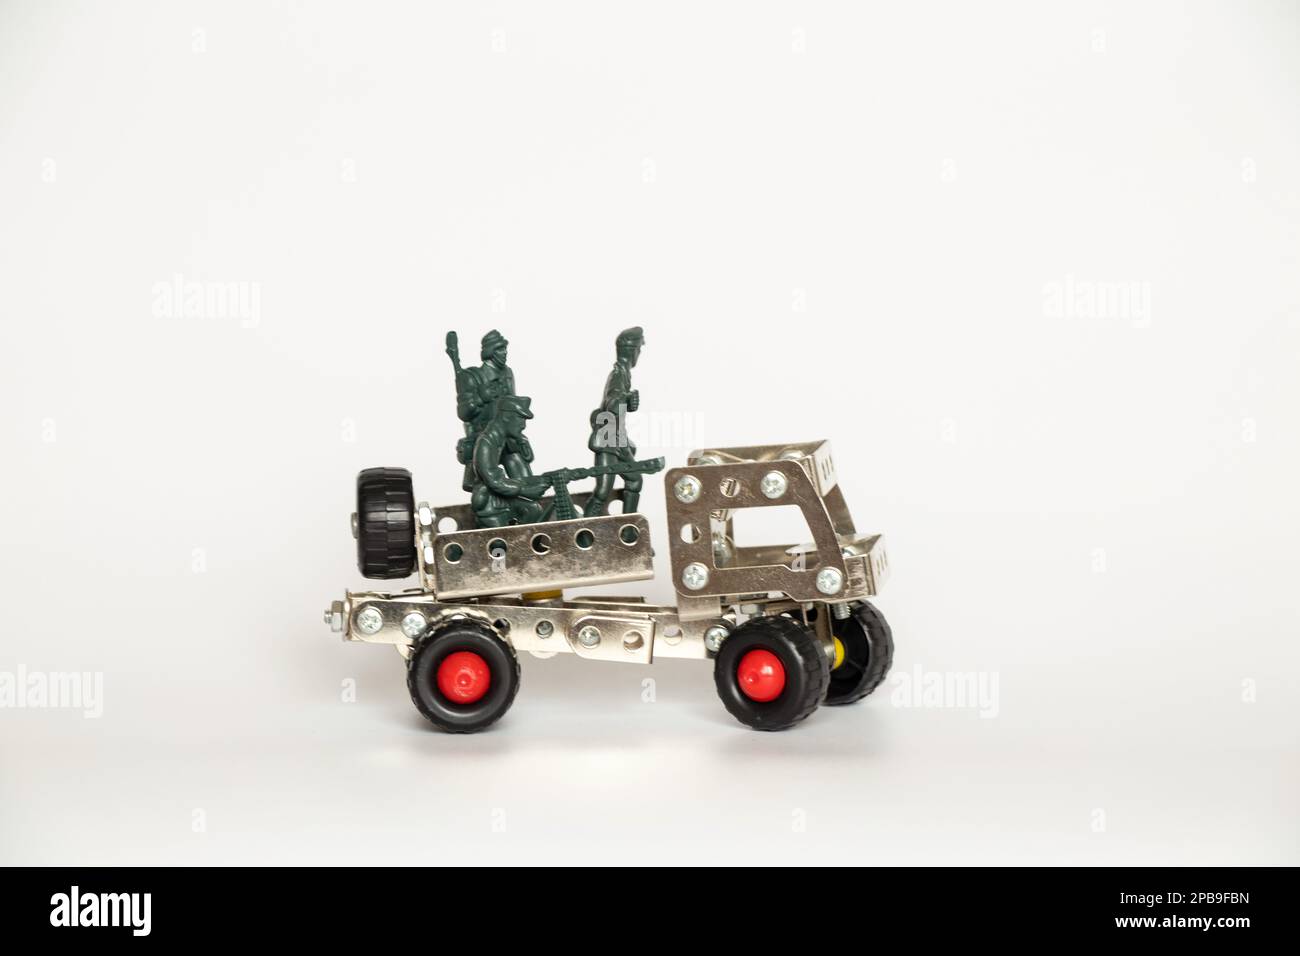 Plastiksoldaten und ein kleines Kinderauto von einem alten Eisenbauer auf weißem Hintergrund, ein Kriegsspiel Stockfoto